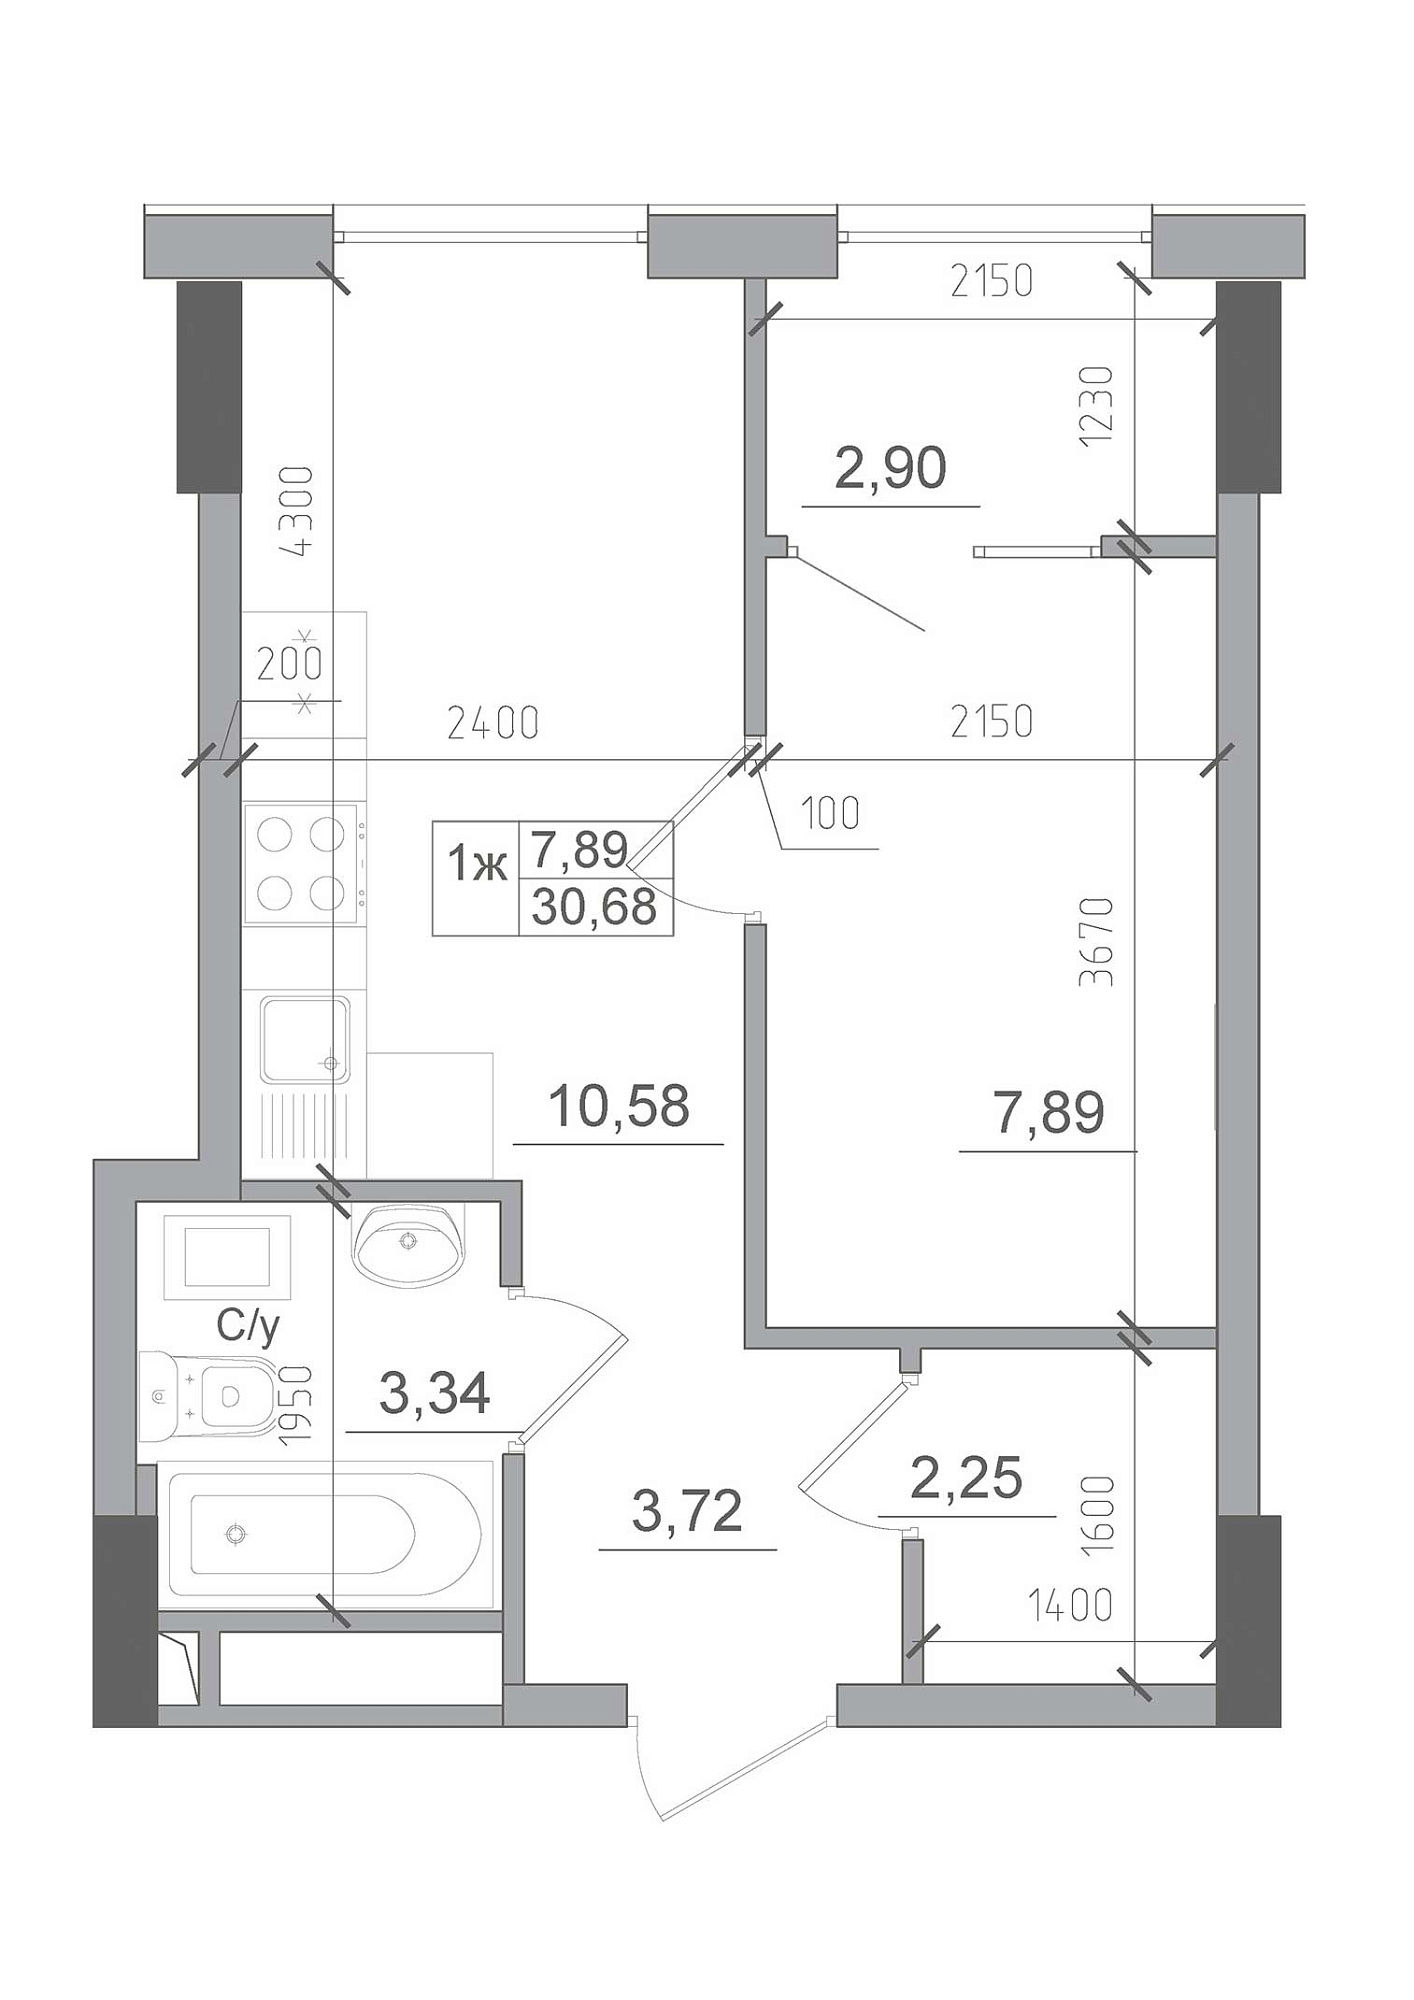 Планировка 1-к квартира площей 30.68м2, AB-22-04/00012.